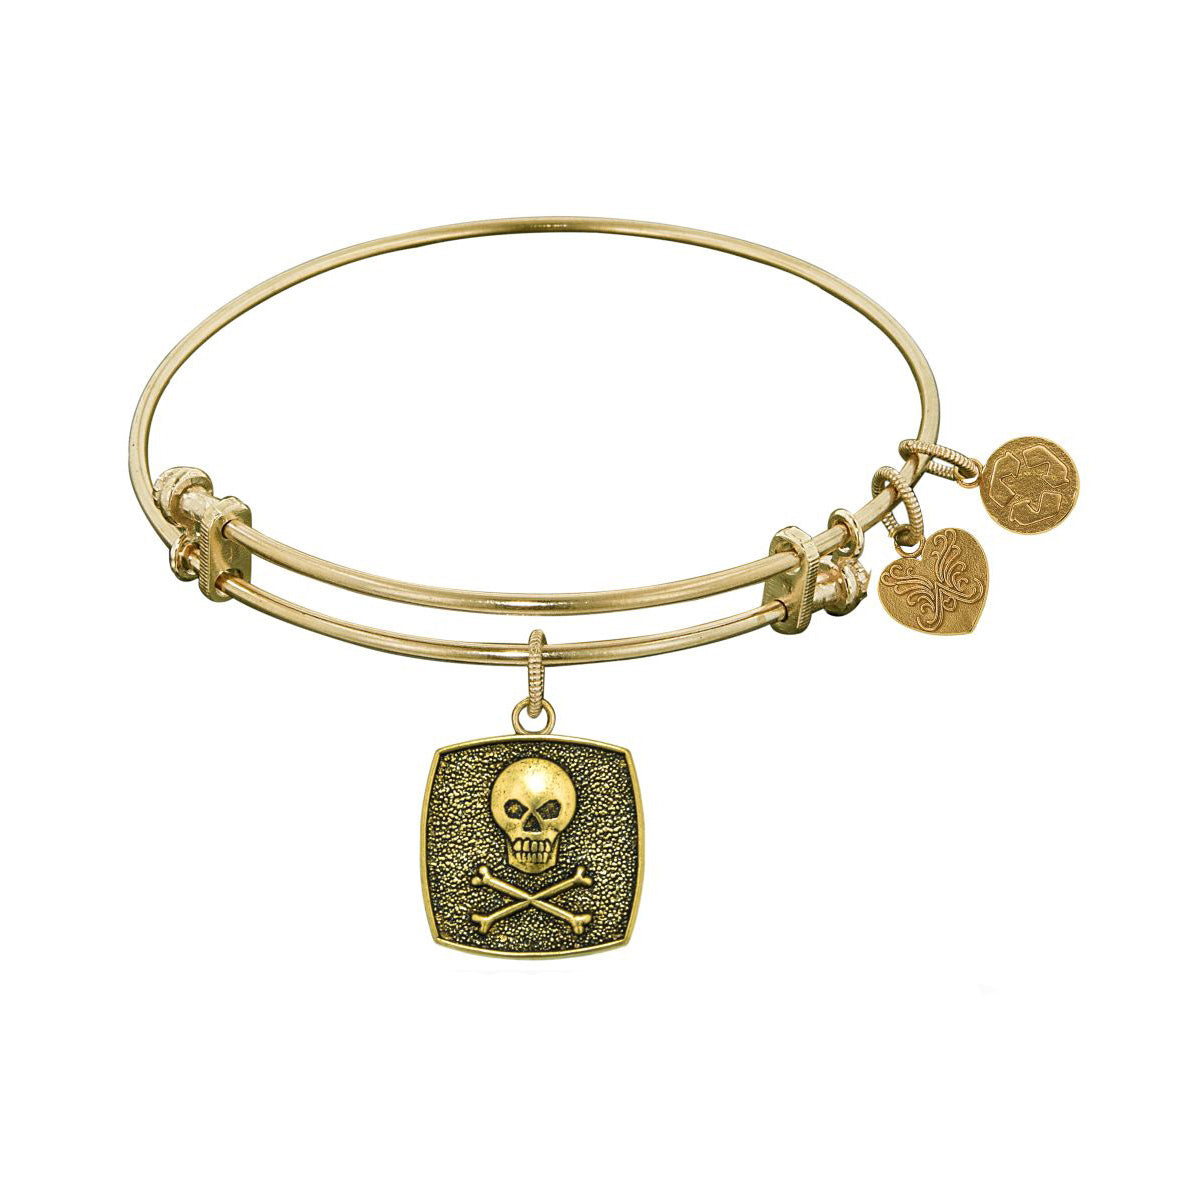 Stipple Finish Brass Skull And Cross Bones Angelica Bangle Bracelet, 7.25" fine designer jewelry for men and women